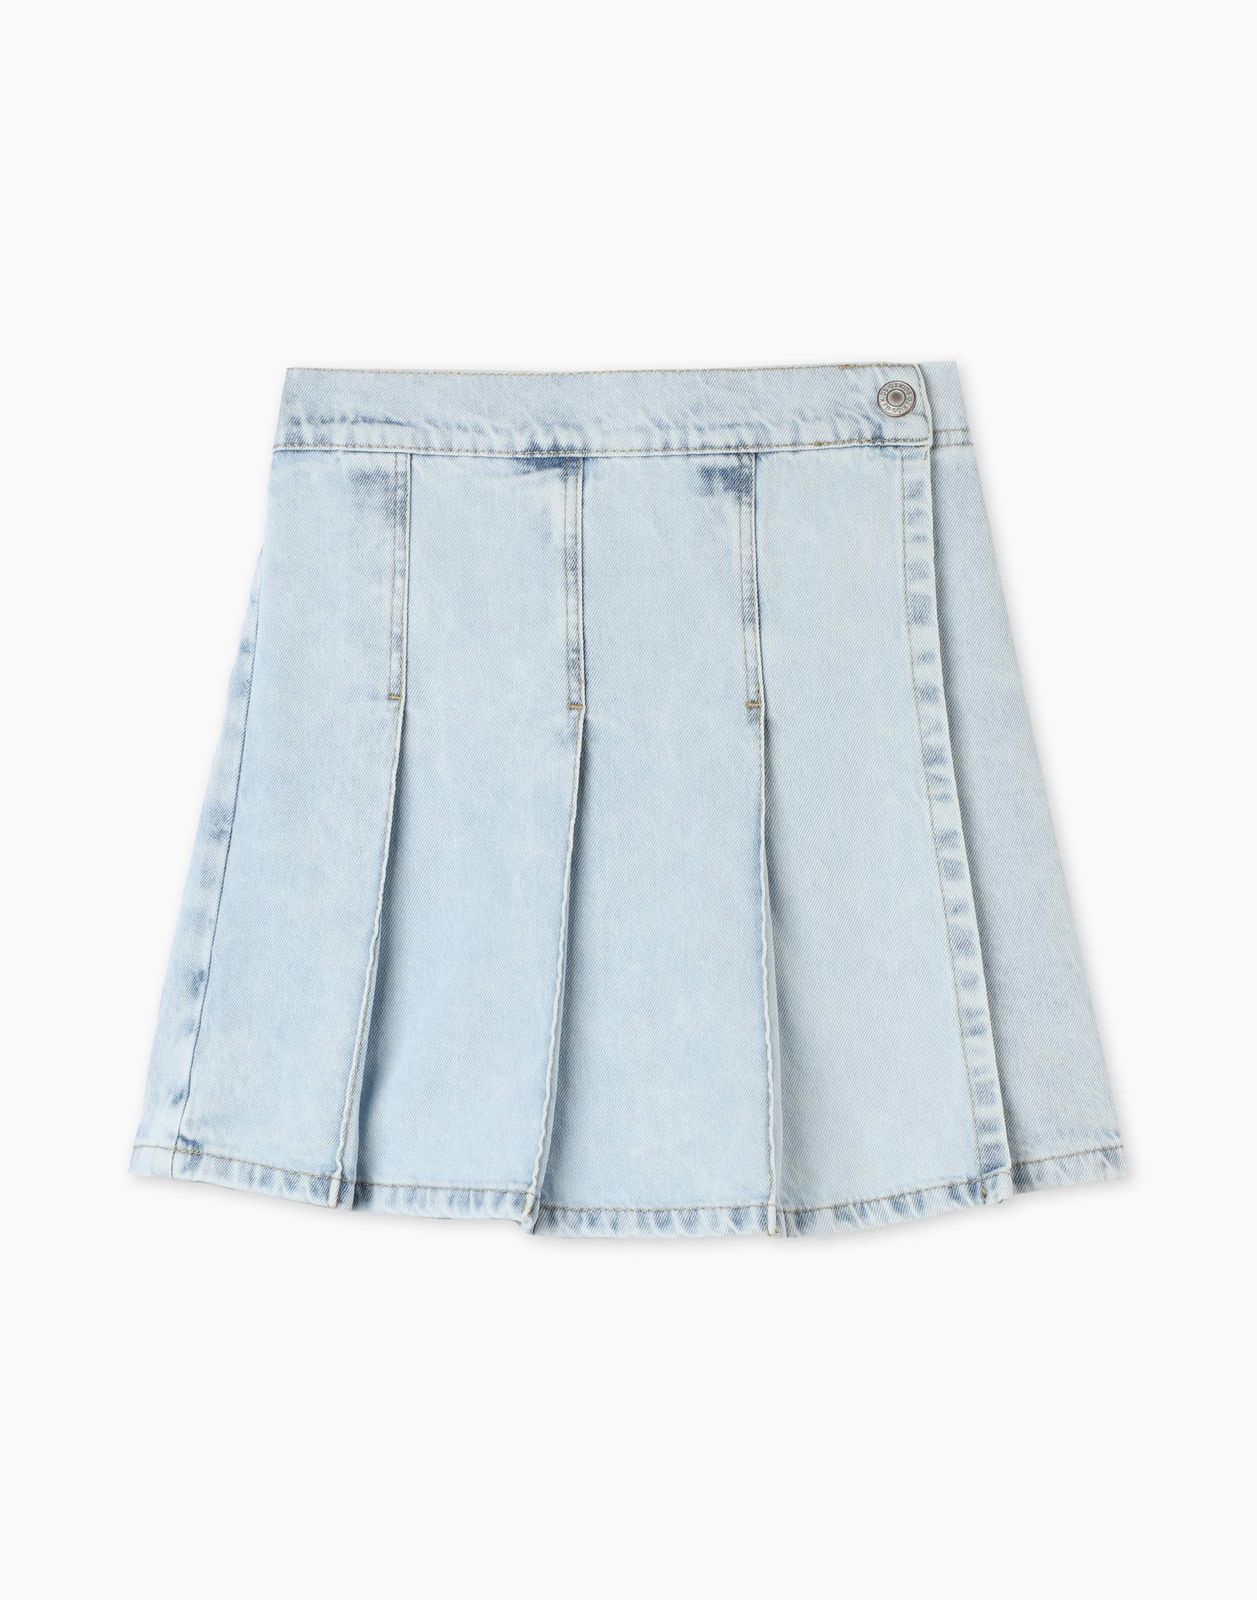 Джинсовая юбка-шорты Gloria Jeans GSK018325 6-8л/122-128 для девочки